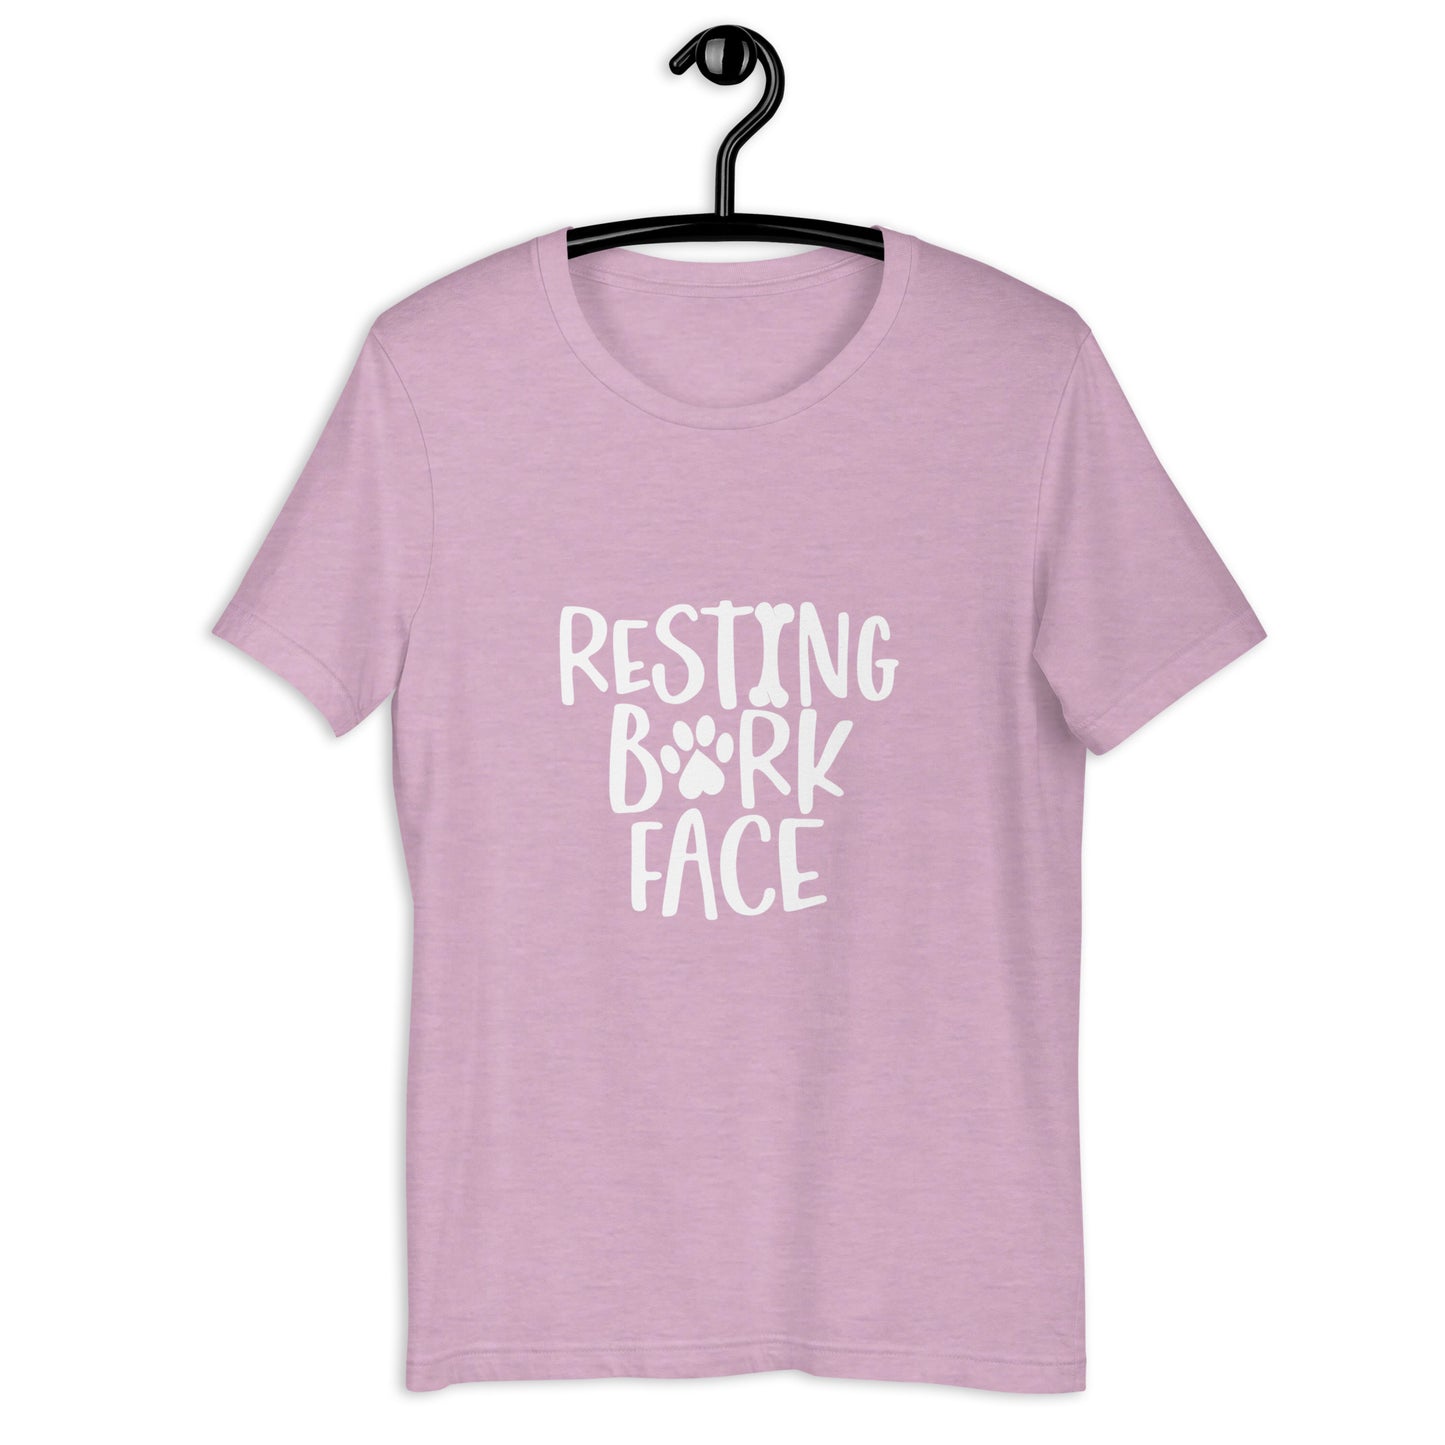 RESTING BARK FACE - Unisex t-shirt